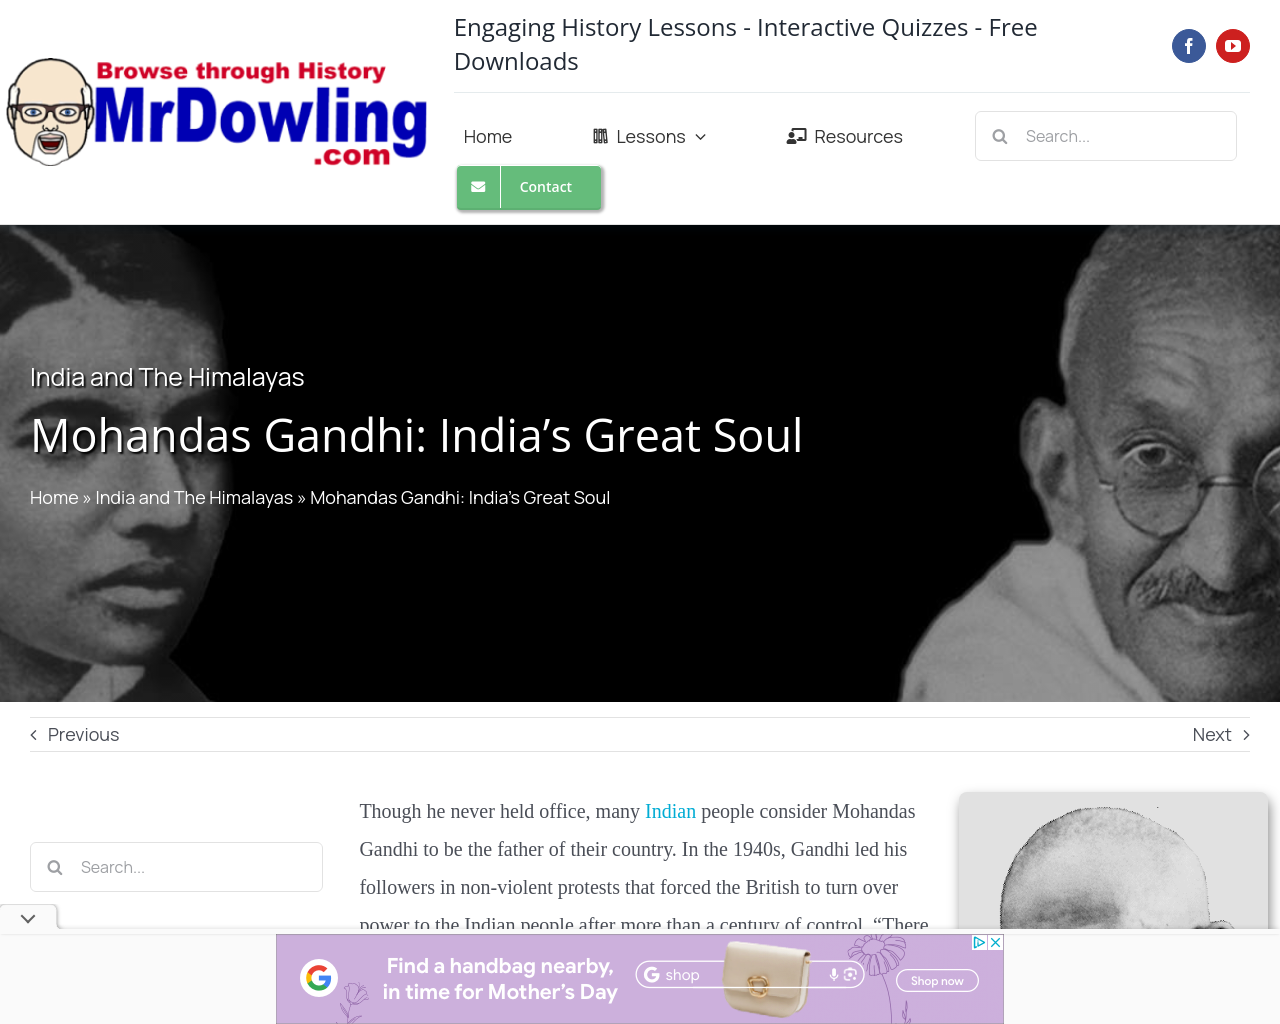 Mohandas Gandhi (mrdowling.com)